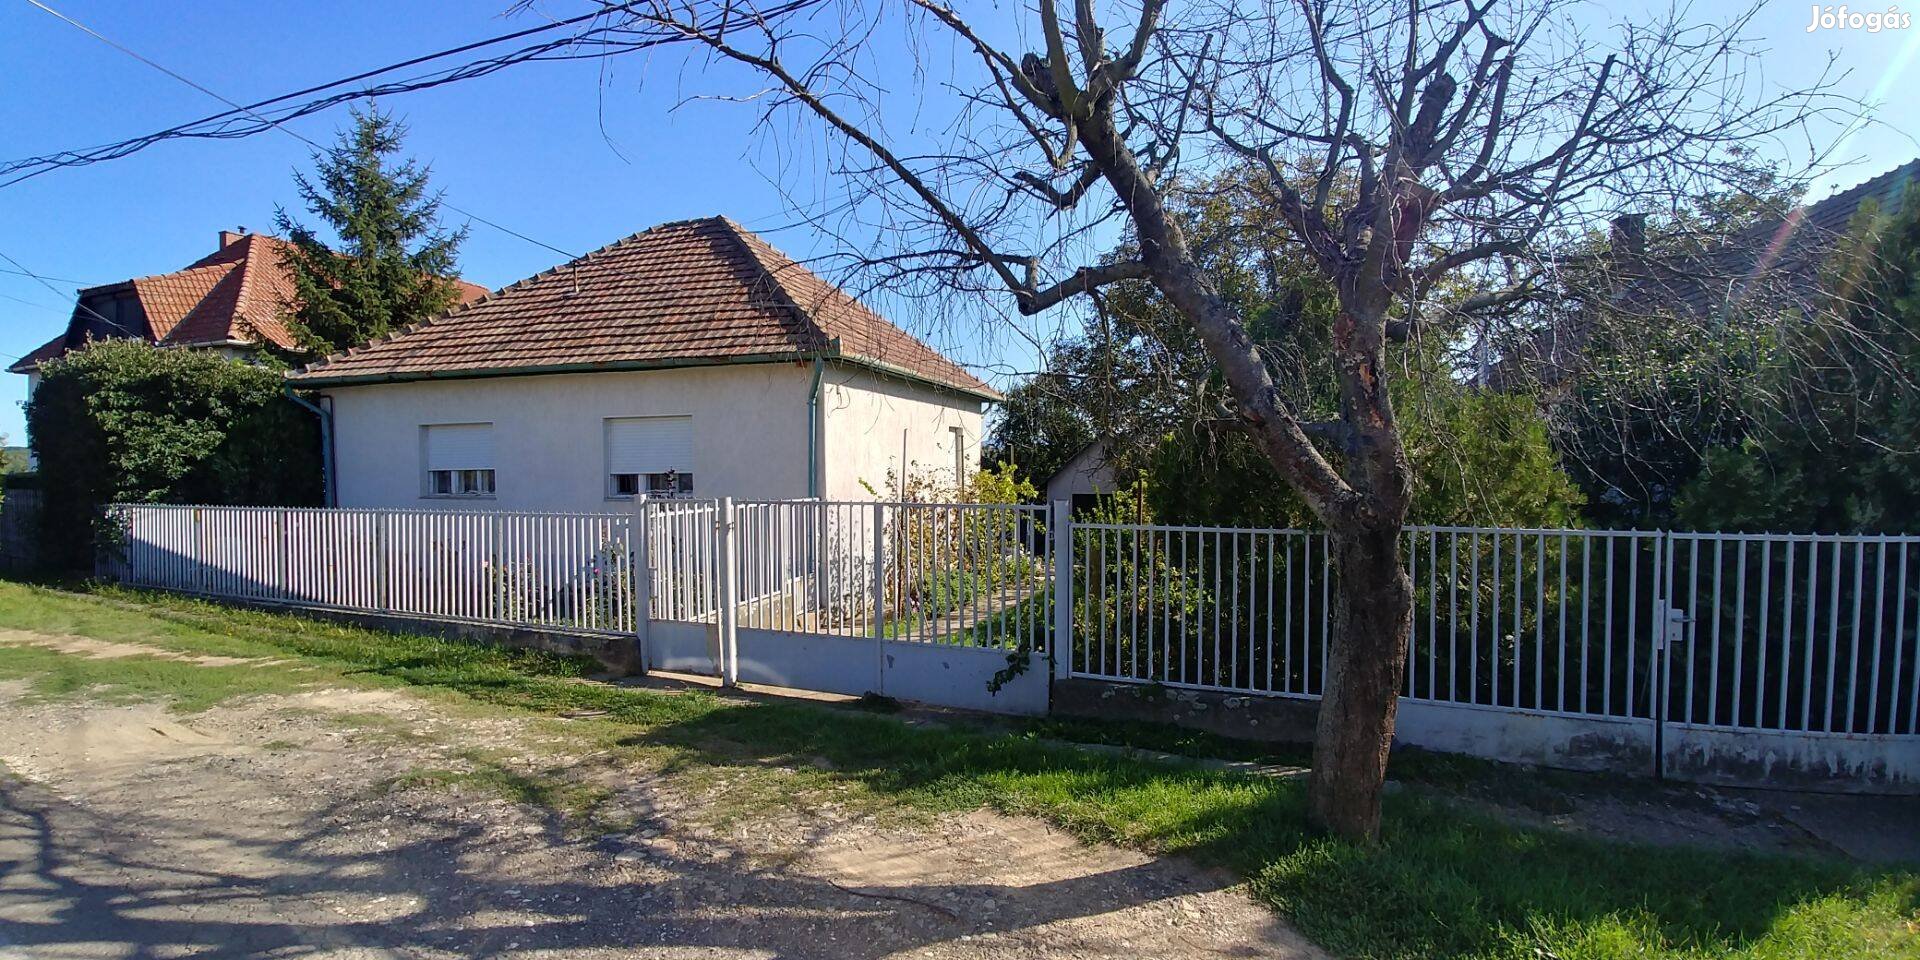 Eladó vált a képeken látható Palotási családi ház (Nógrád megye)